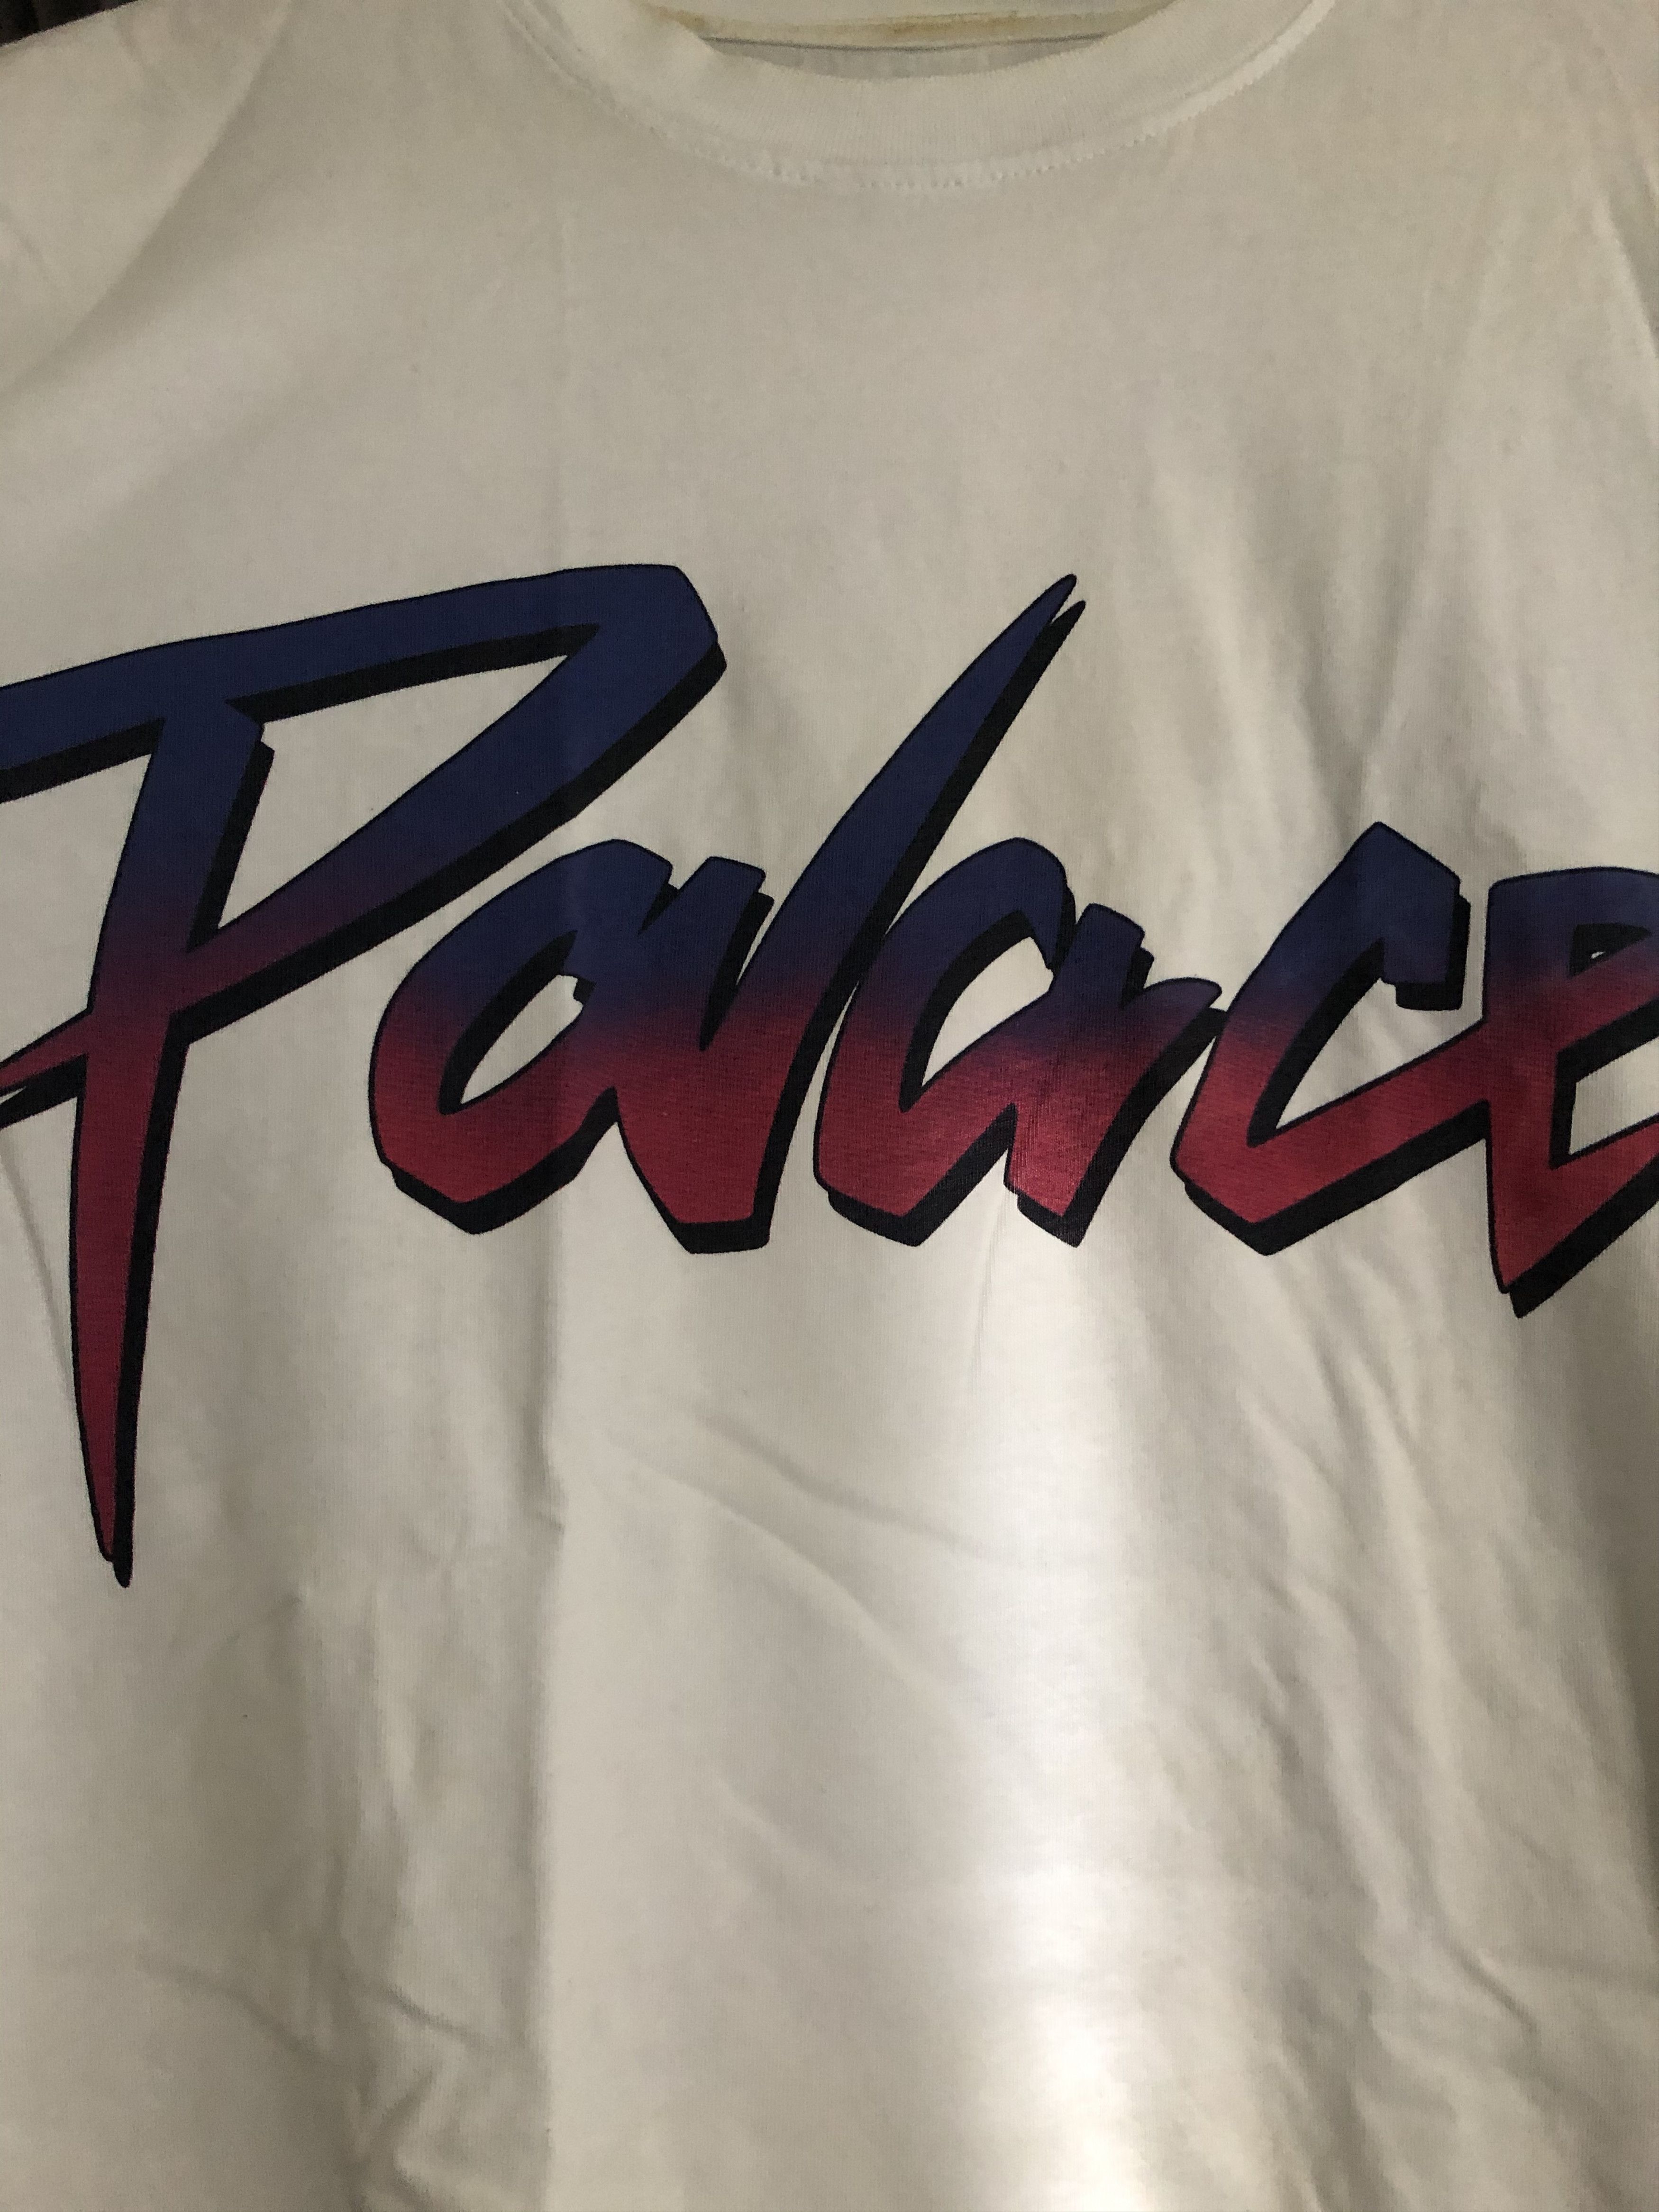 Palace Palace Tee Shirt Size US S / EU 44-46 / 1 - 2 Preview